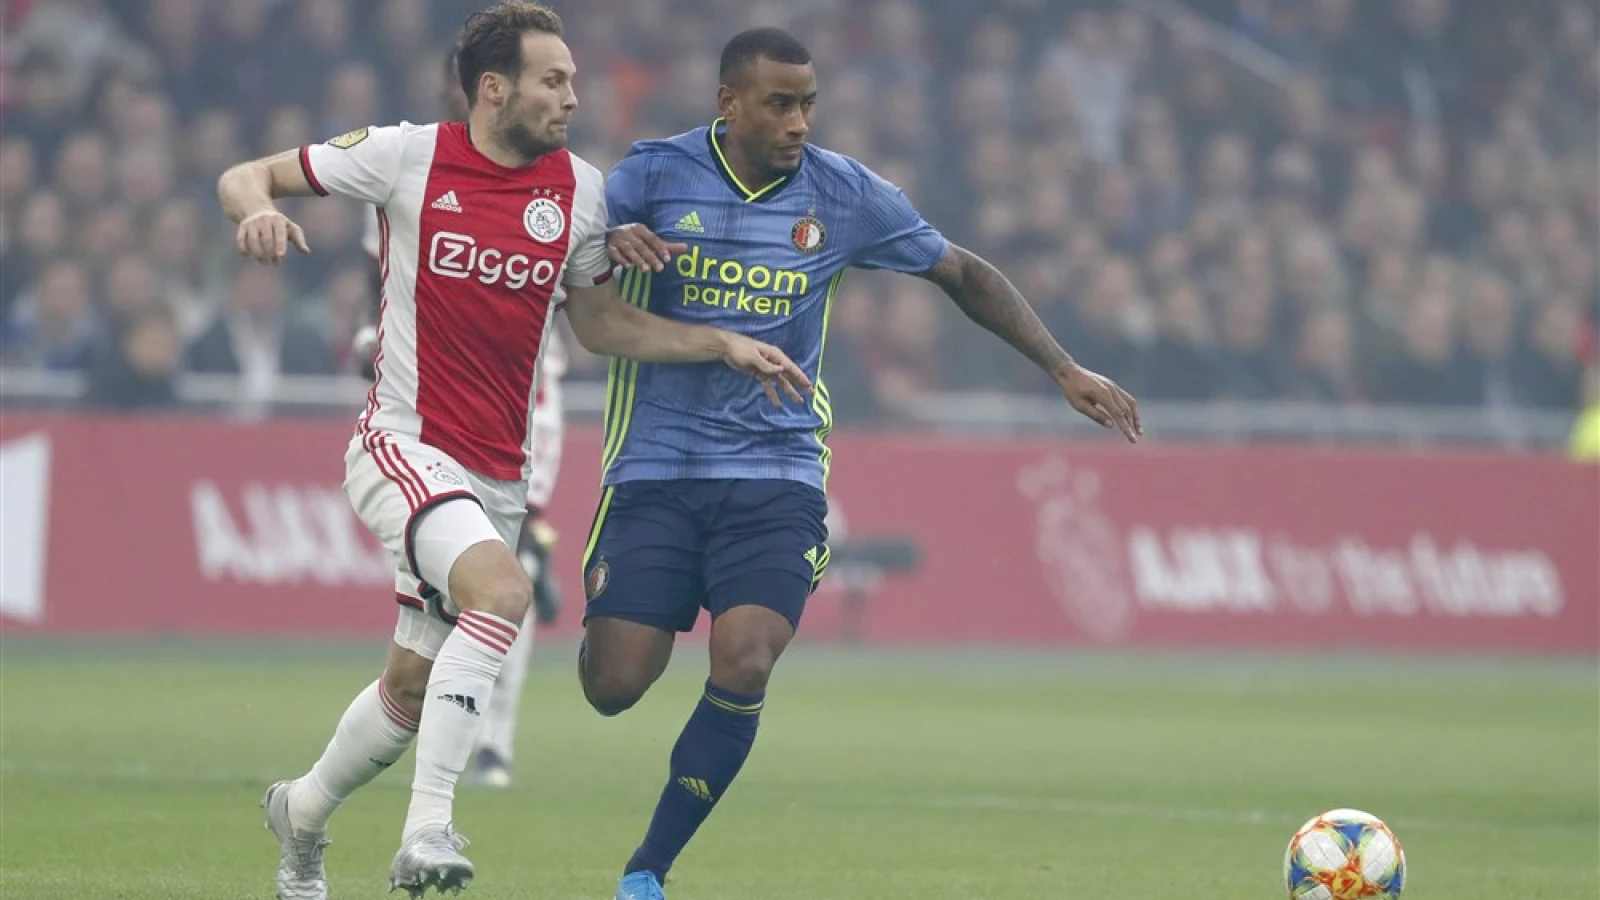 LIVE | Ajax - Feyenoord 4-0 | Einde wedstrijd